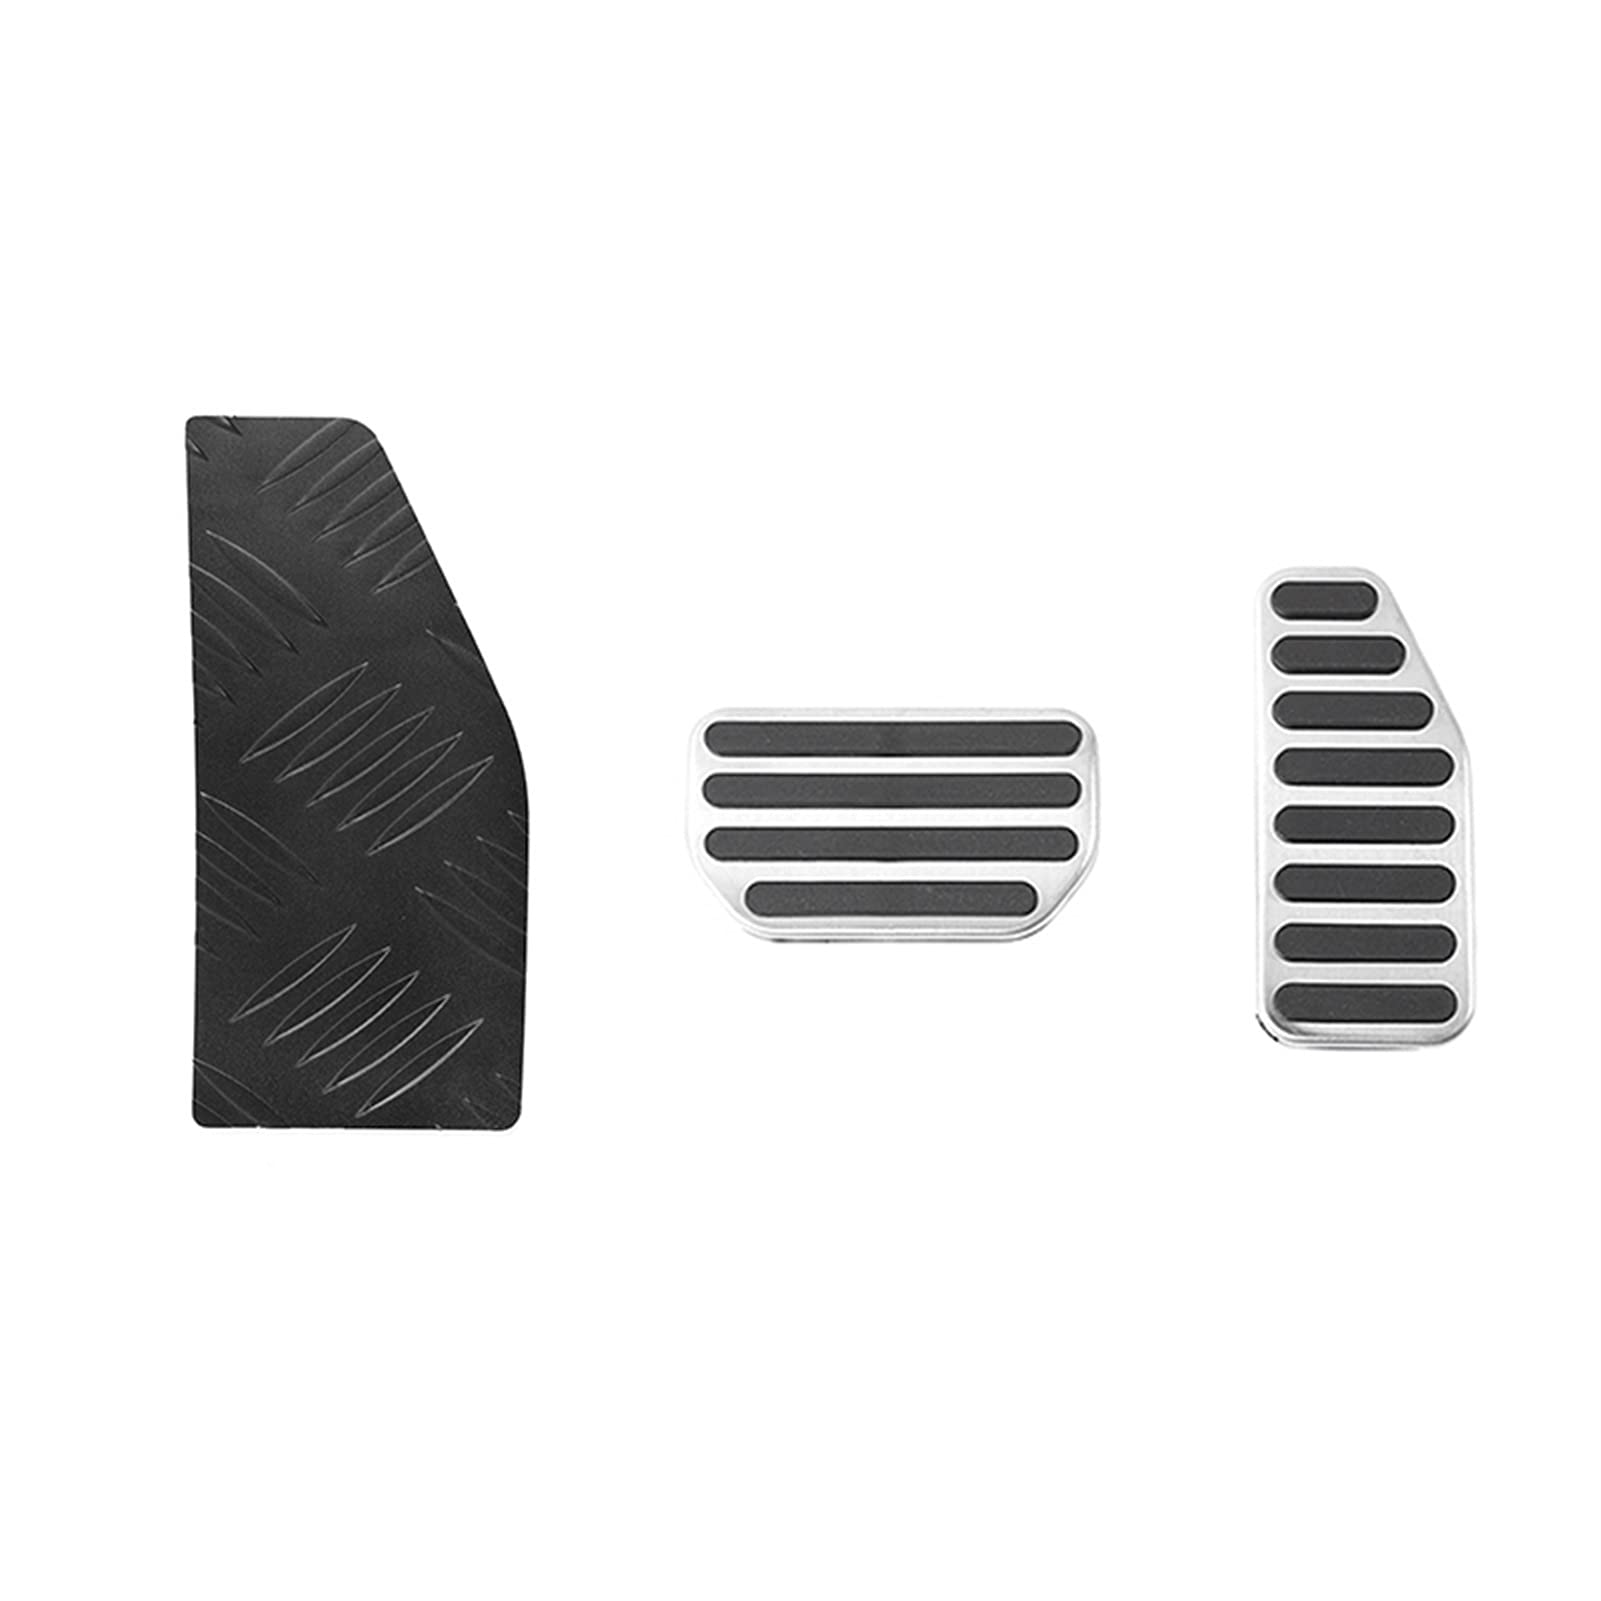 RIXENT Linke Fußstütze Pedal Auto Bremspedal Dekoration Abdeckung Zubehör, for Suzuki, Jimny AT, for Suzuki, Jimny 2019 2020 Fußpedalauflage(BLACK 3 pcs) von RIXENT